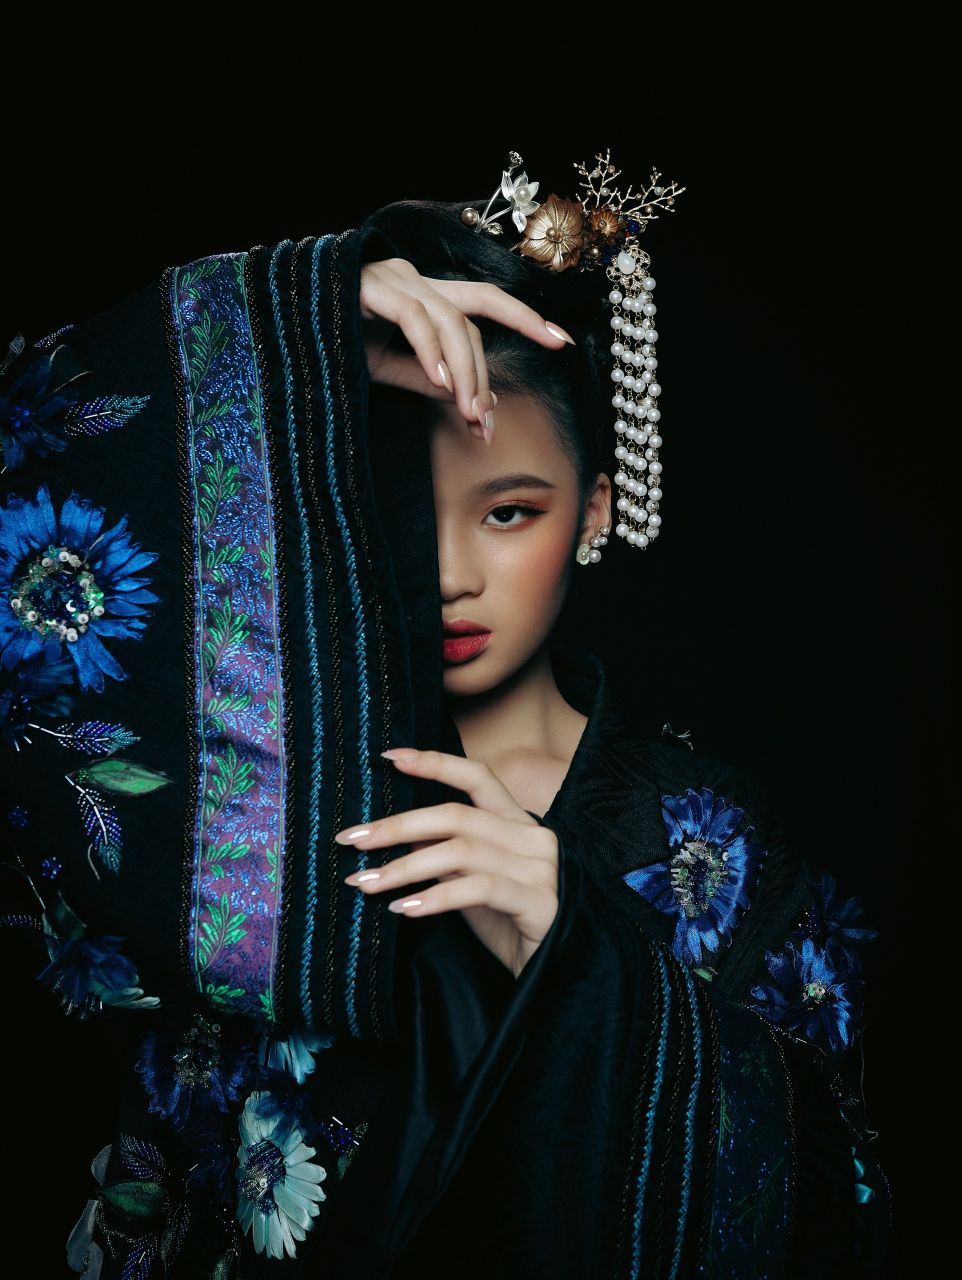 Bao Ha10 Mẫu nhí Bảo Hà đẹp lạ trong bộ ảnh lấy cảm hứng từ văn hóa Á Đông